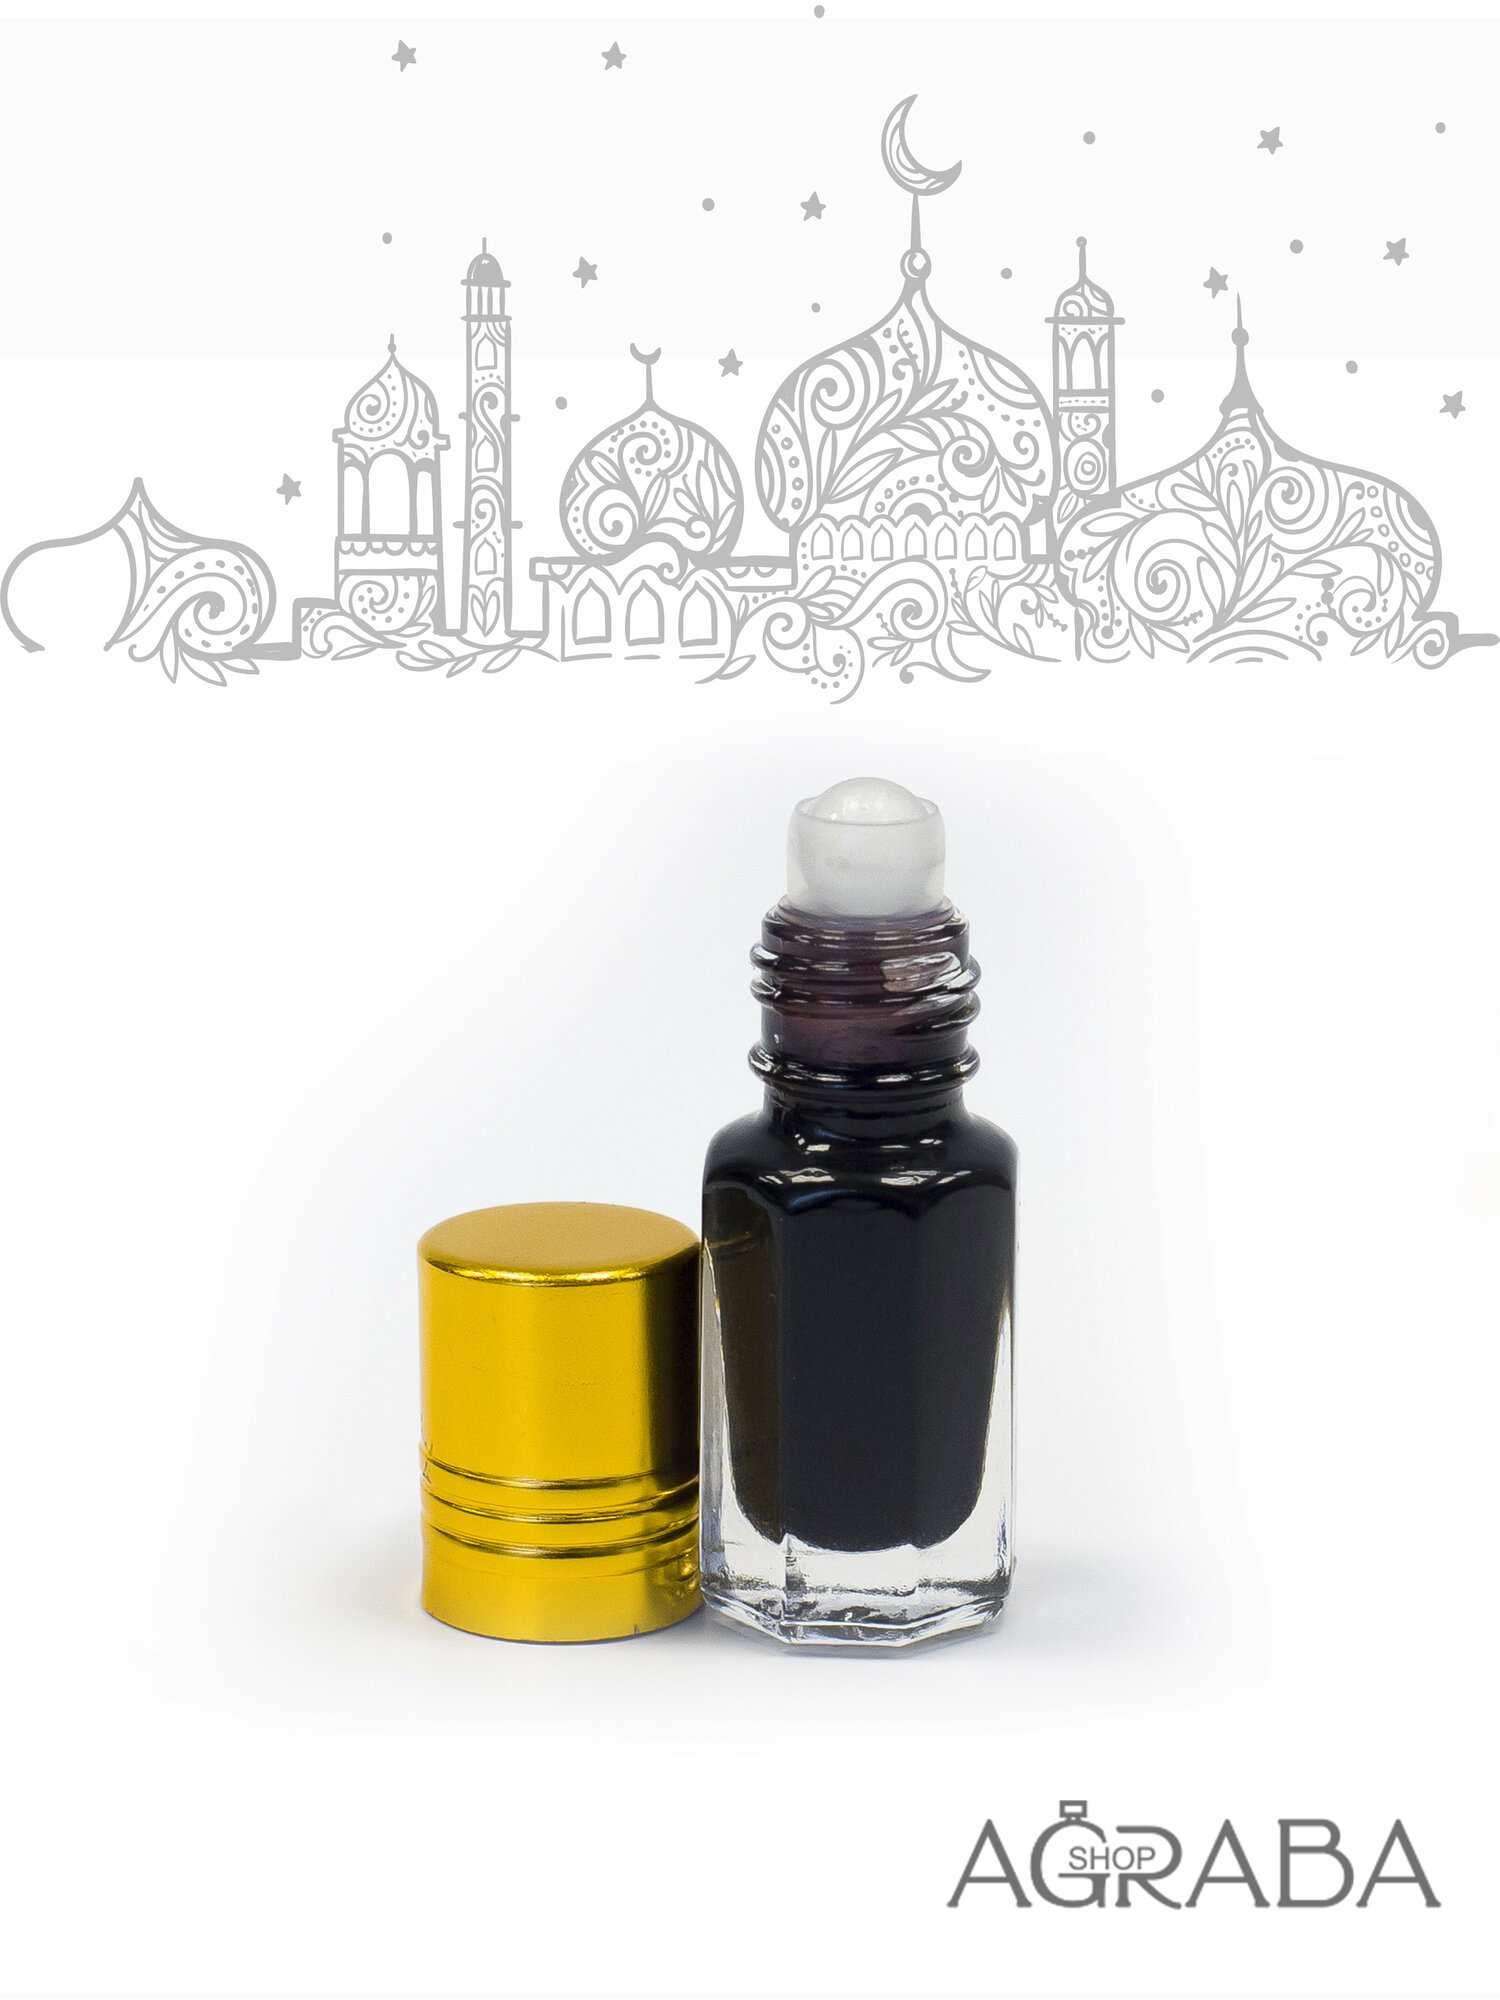 Agraba-Shop, Molecules Black, 3 ml, Масло-Духи